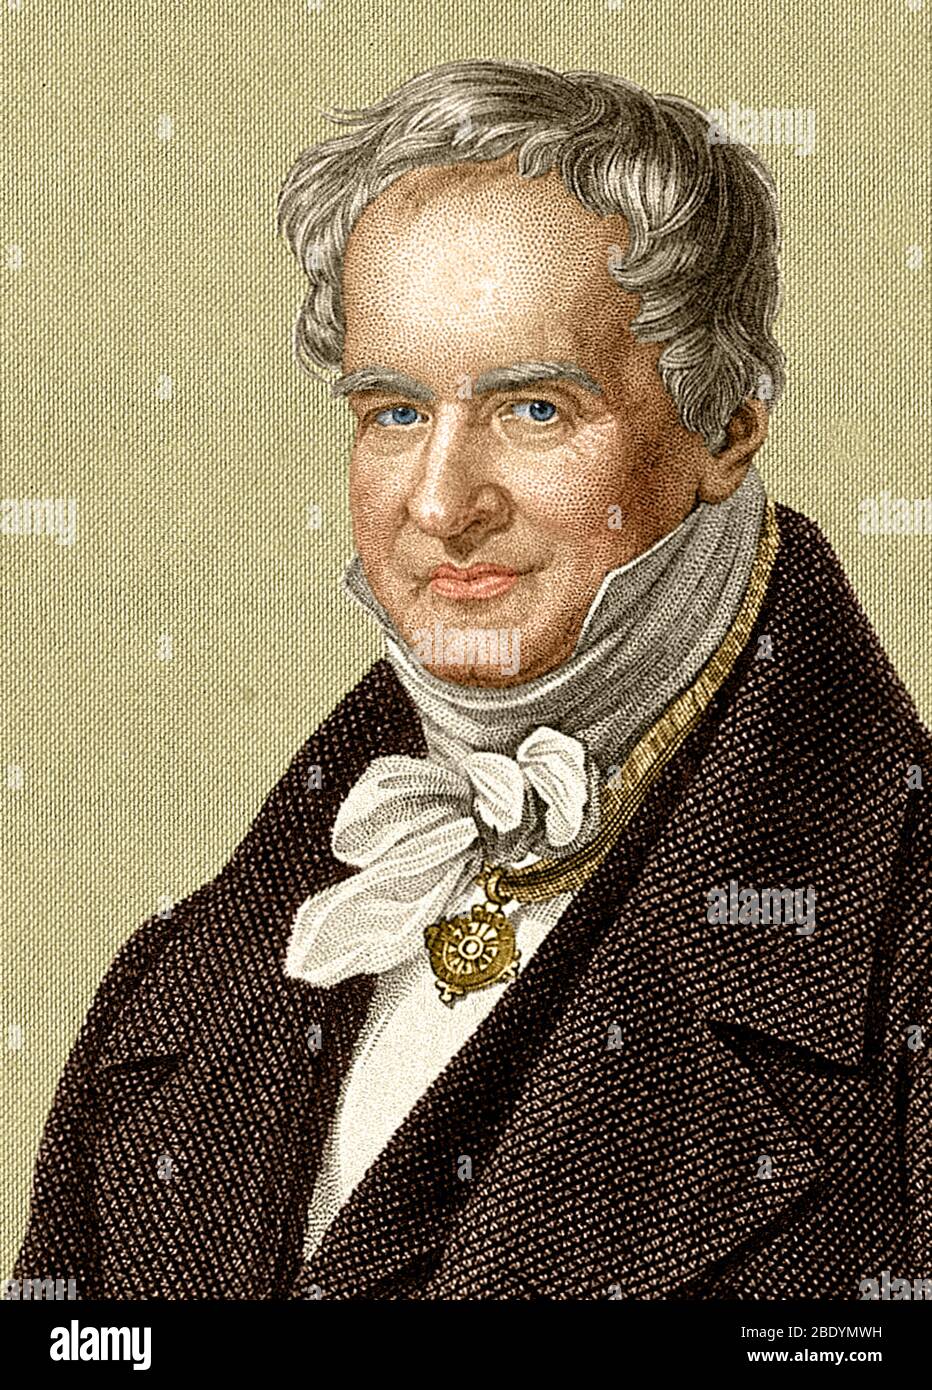 Alexander von Humboldt, naturalista prusiano Foto de stock